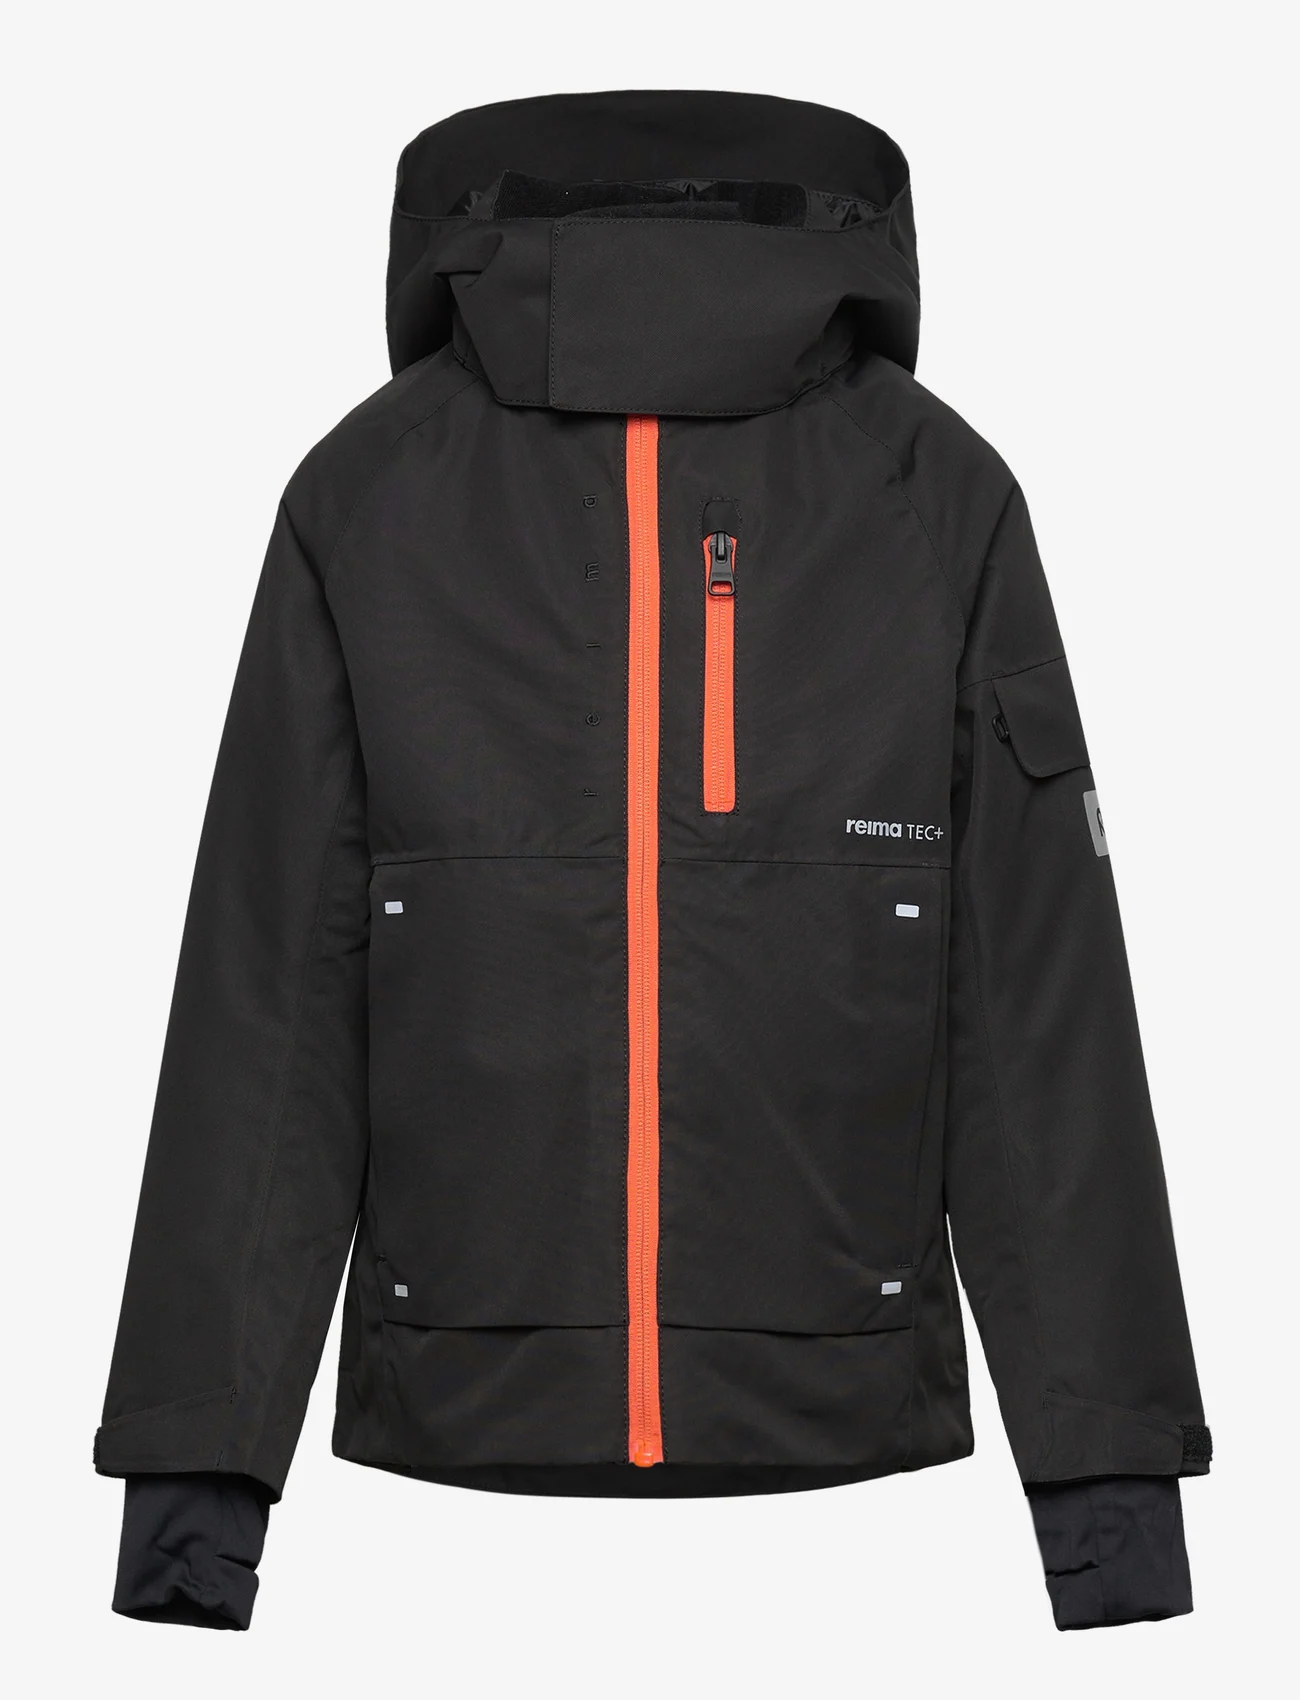 Reima - Reimatec winter jacket, Tieten - vinterjackor - black - 0